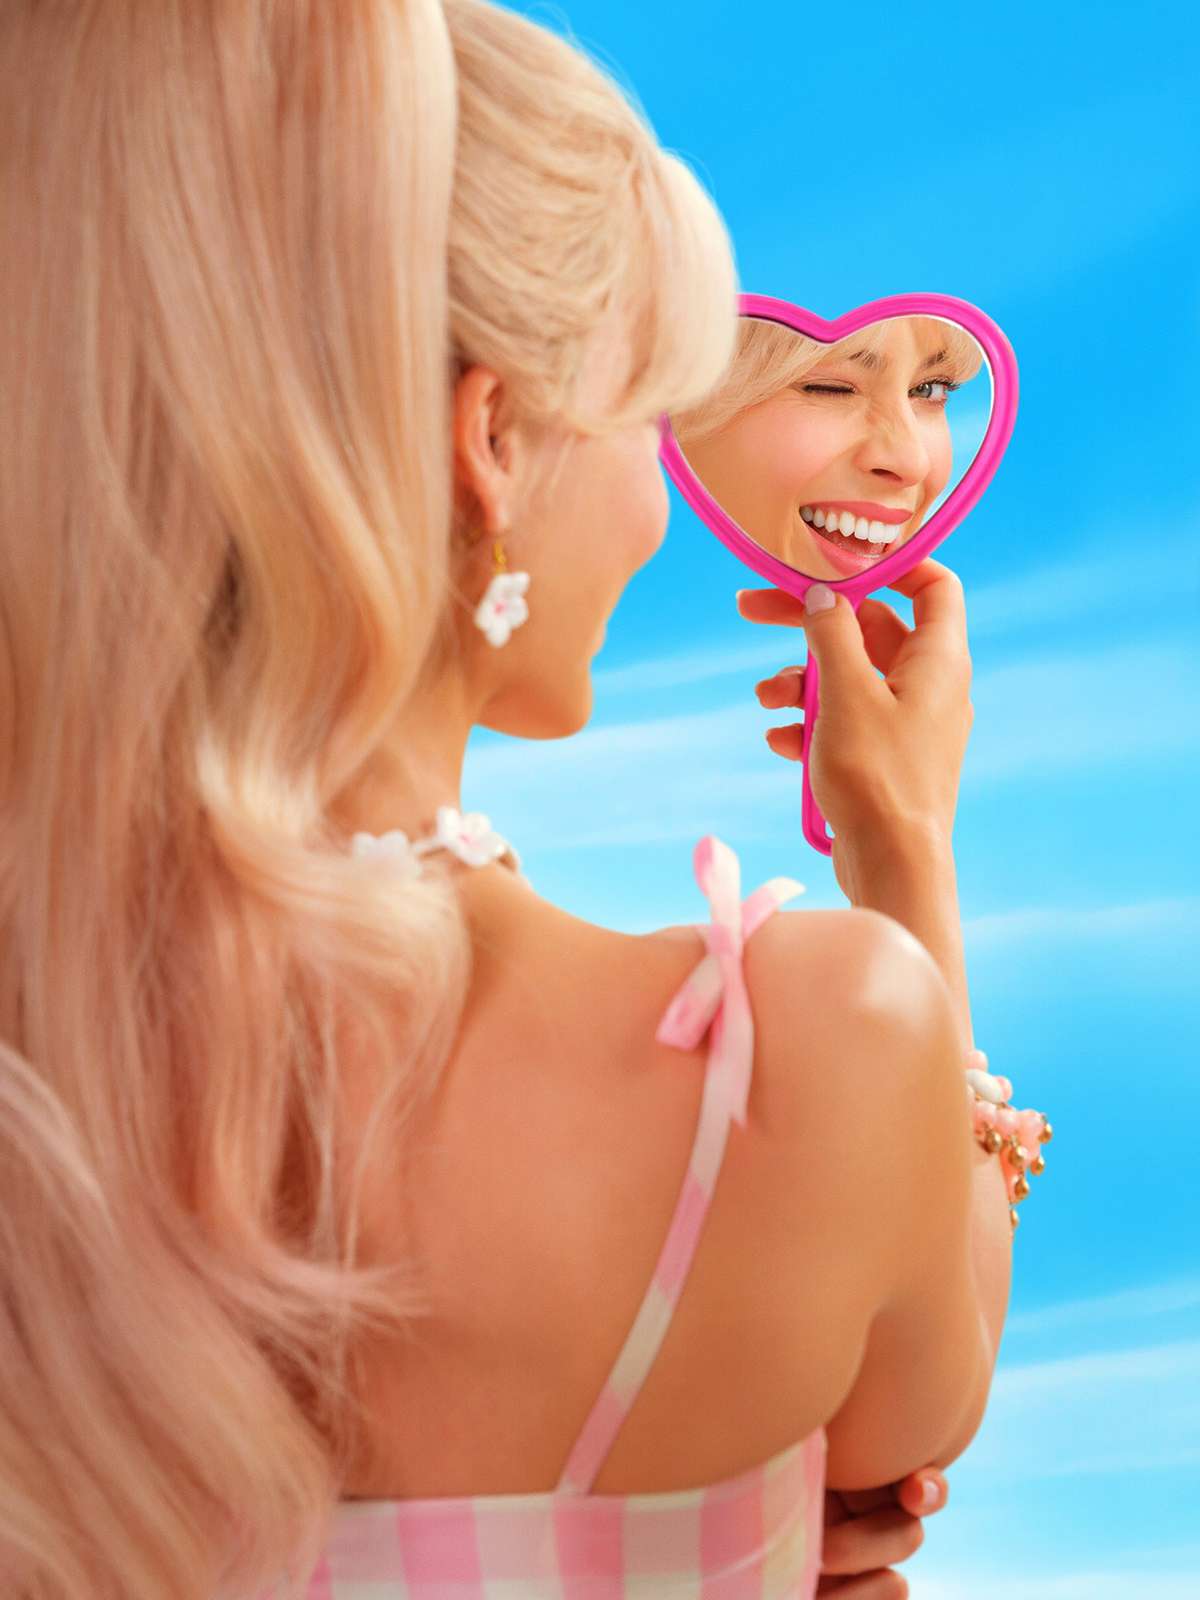 Filme da Barbie quebra recordes e arrecada US$ 500 mi na 1ª semana